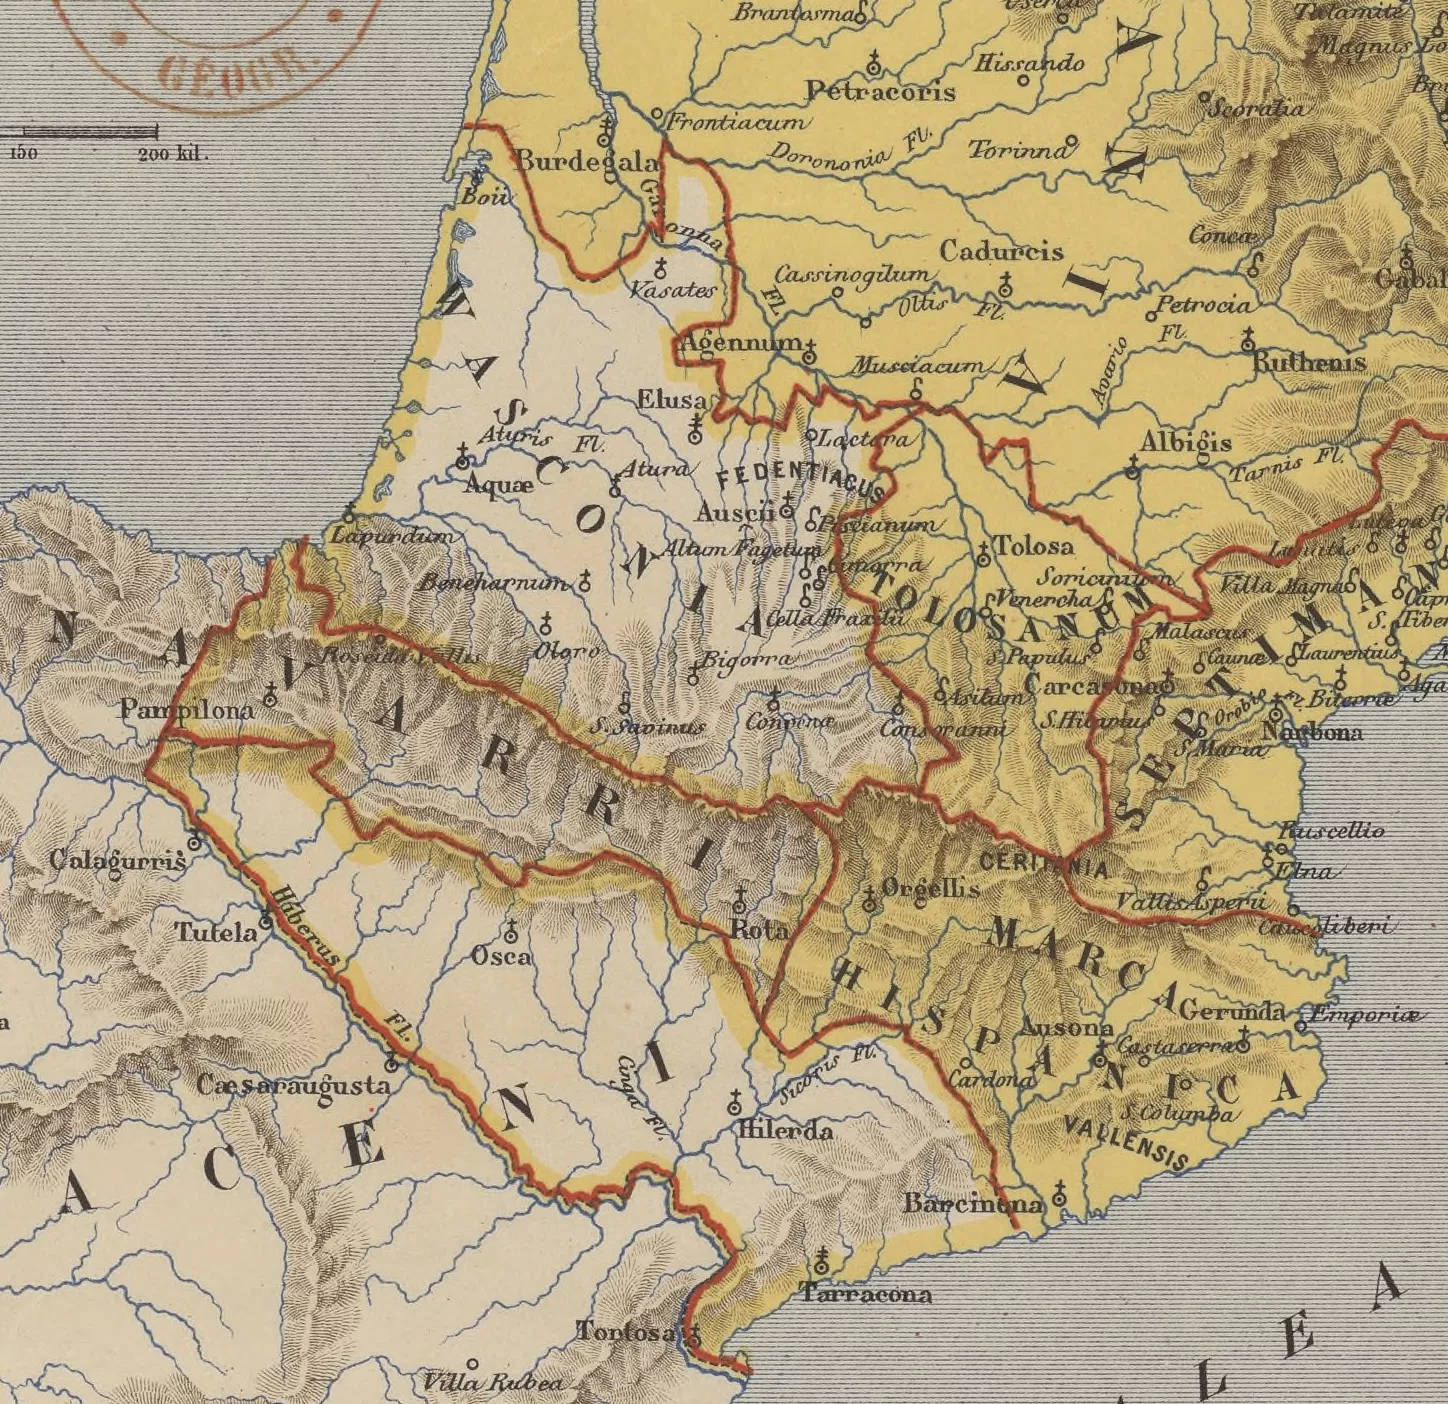 Mapa de la "Marca Hispànica", "Navarra" i "Wasconia" el 806 segons Auguste Longnon (1876)